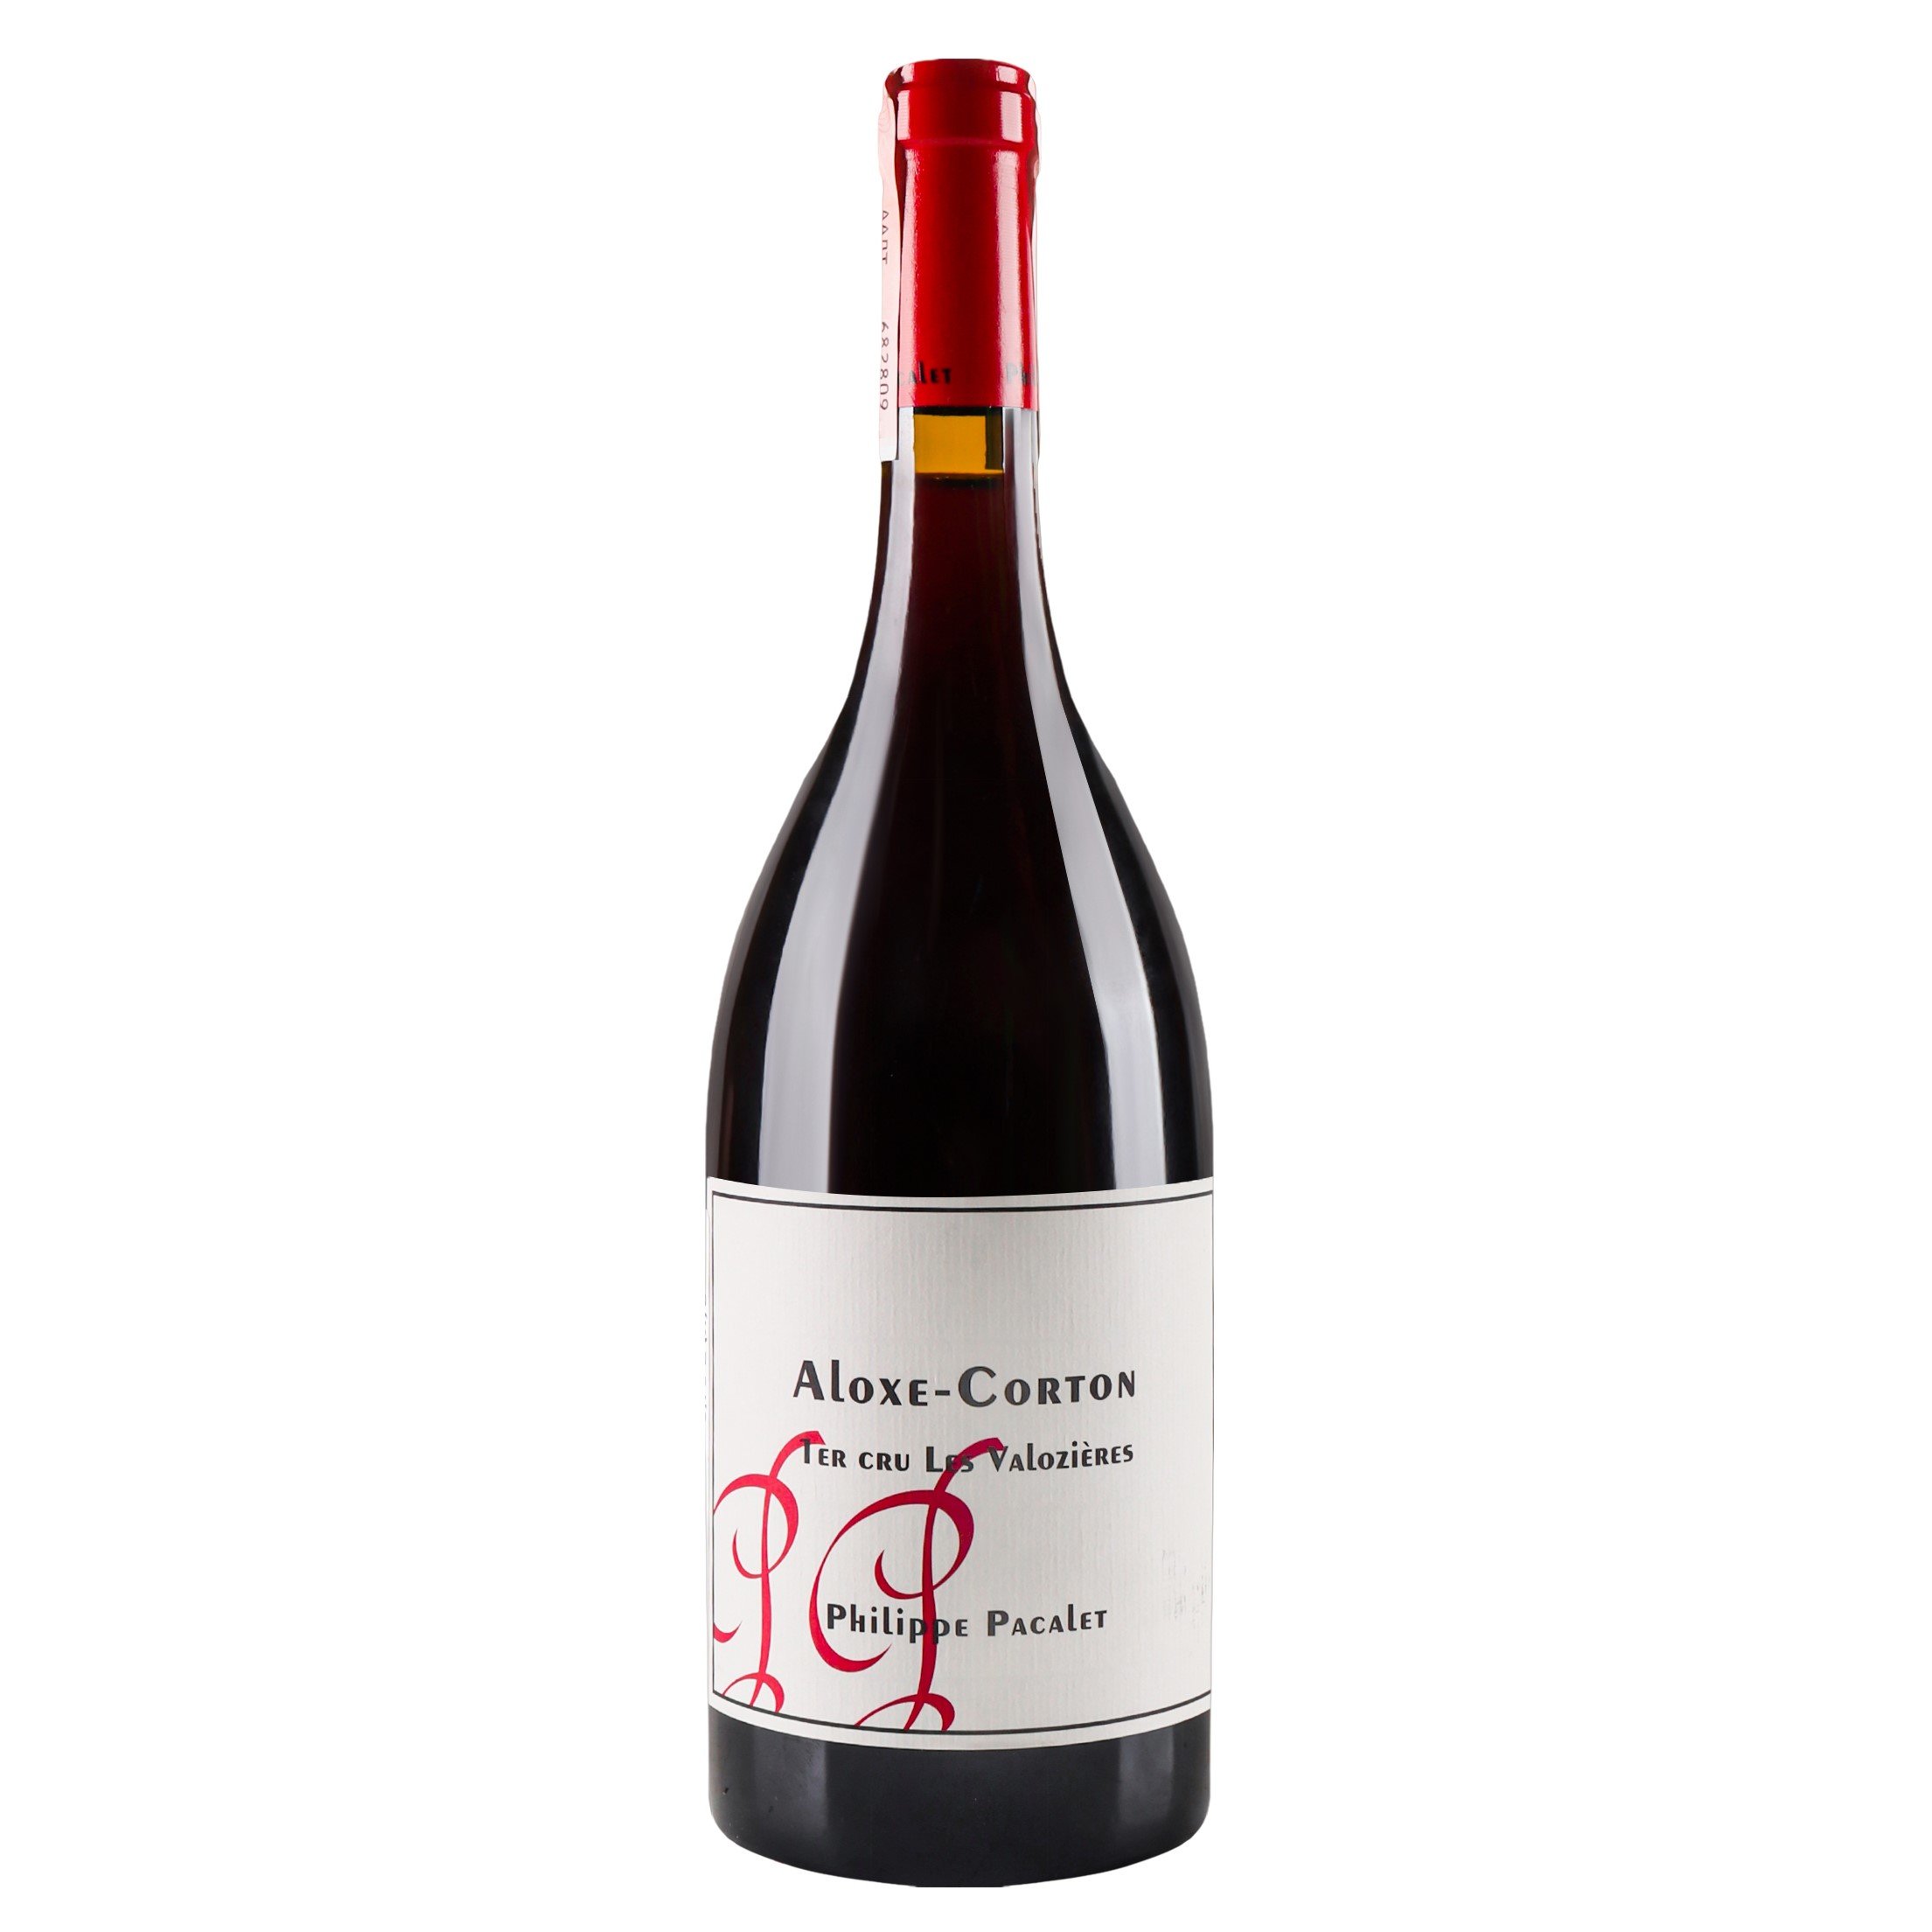 Вино Philippe Pacalet Aloxe Corton Premier Сru Les Valozieres 2016 AOC/AOP, 13%, 0,75 л (801593) - фото 1